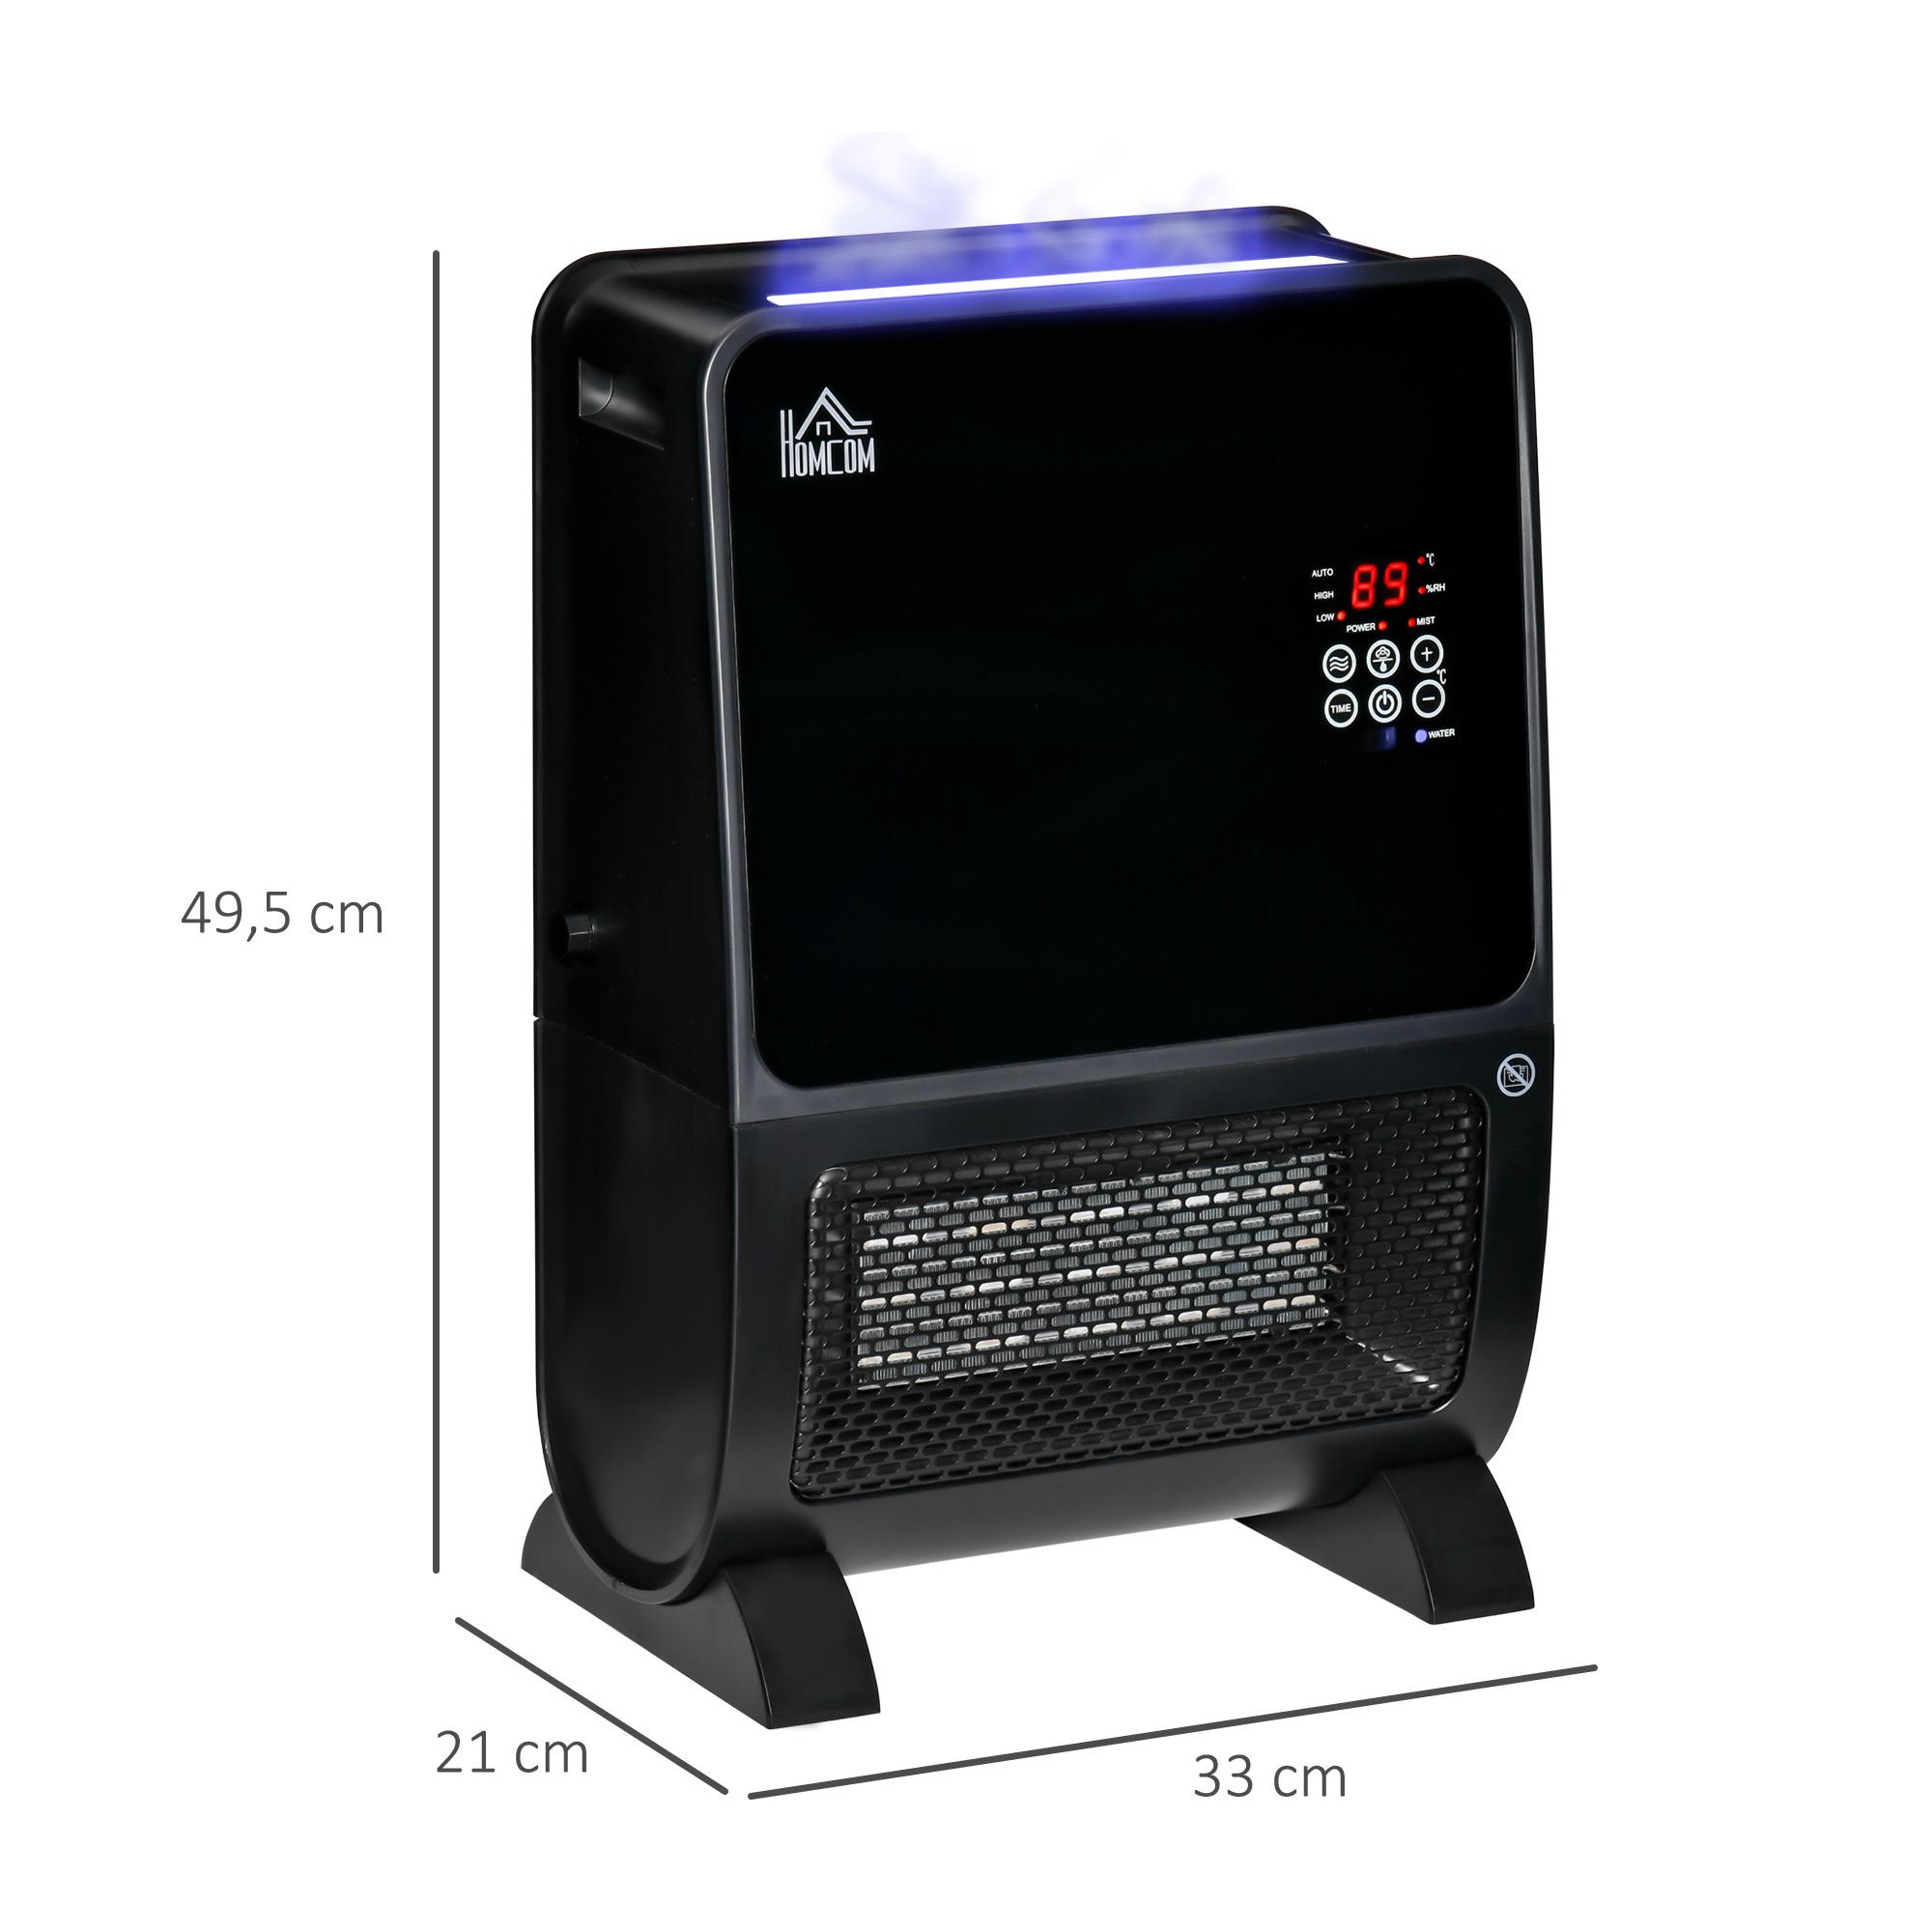 HOMCOM Chauffage humidificateur 2 en 1 avec éclairage LED 3 couleurs - chauffage soufflant 2000 W céramique PTC - 3 modes, timer - télécommande incluse - ABS noir